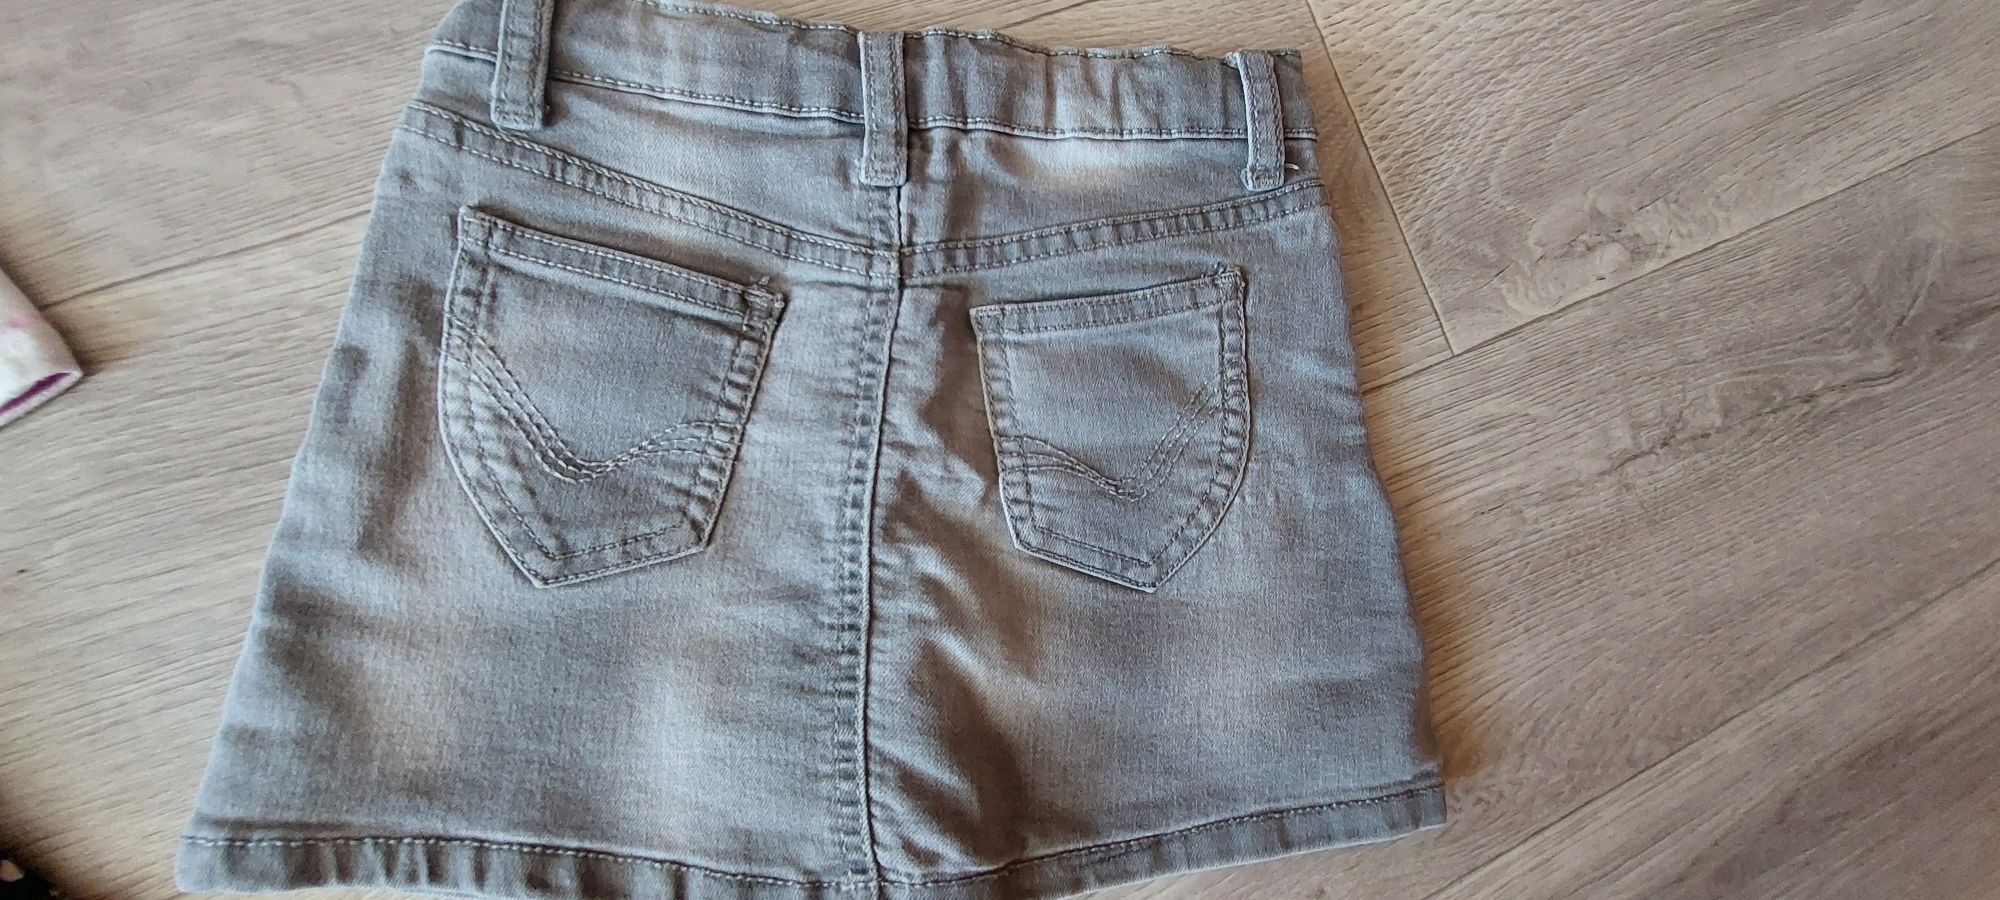 Футболки и шорты,  юбка джинсовая  на 4-6 лет